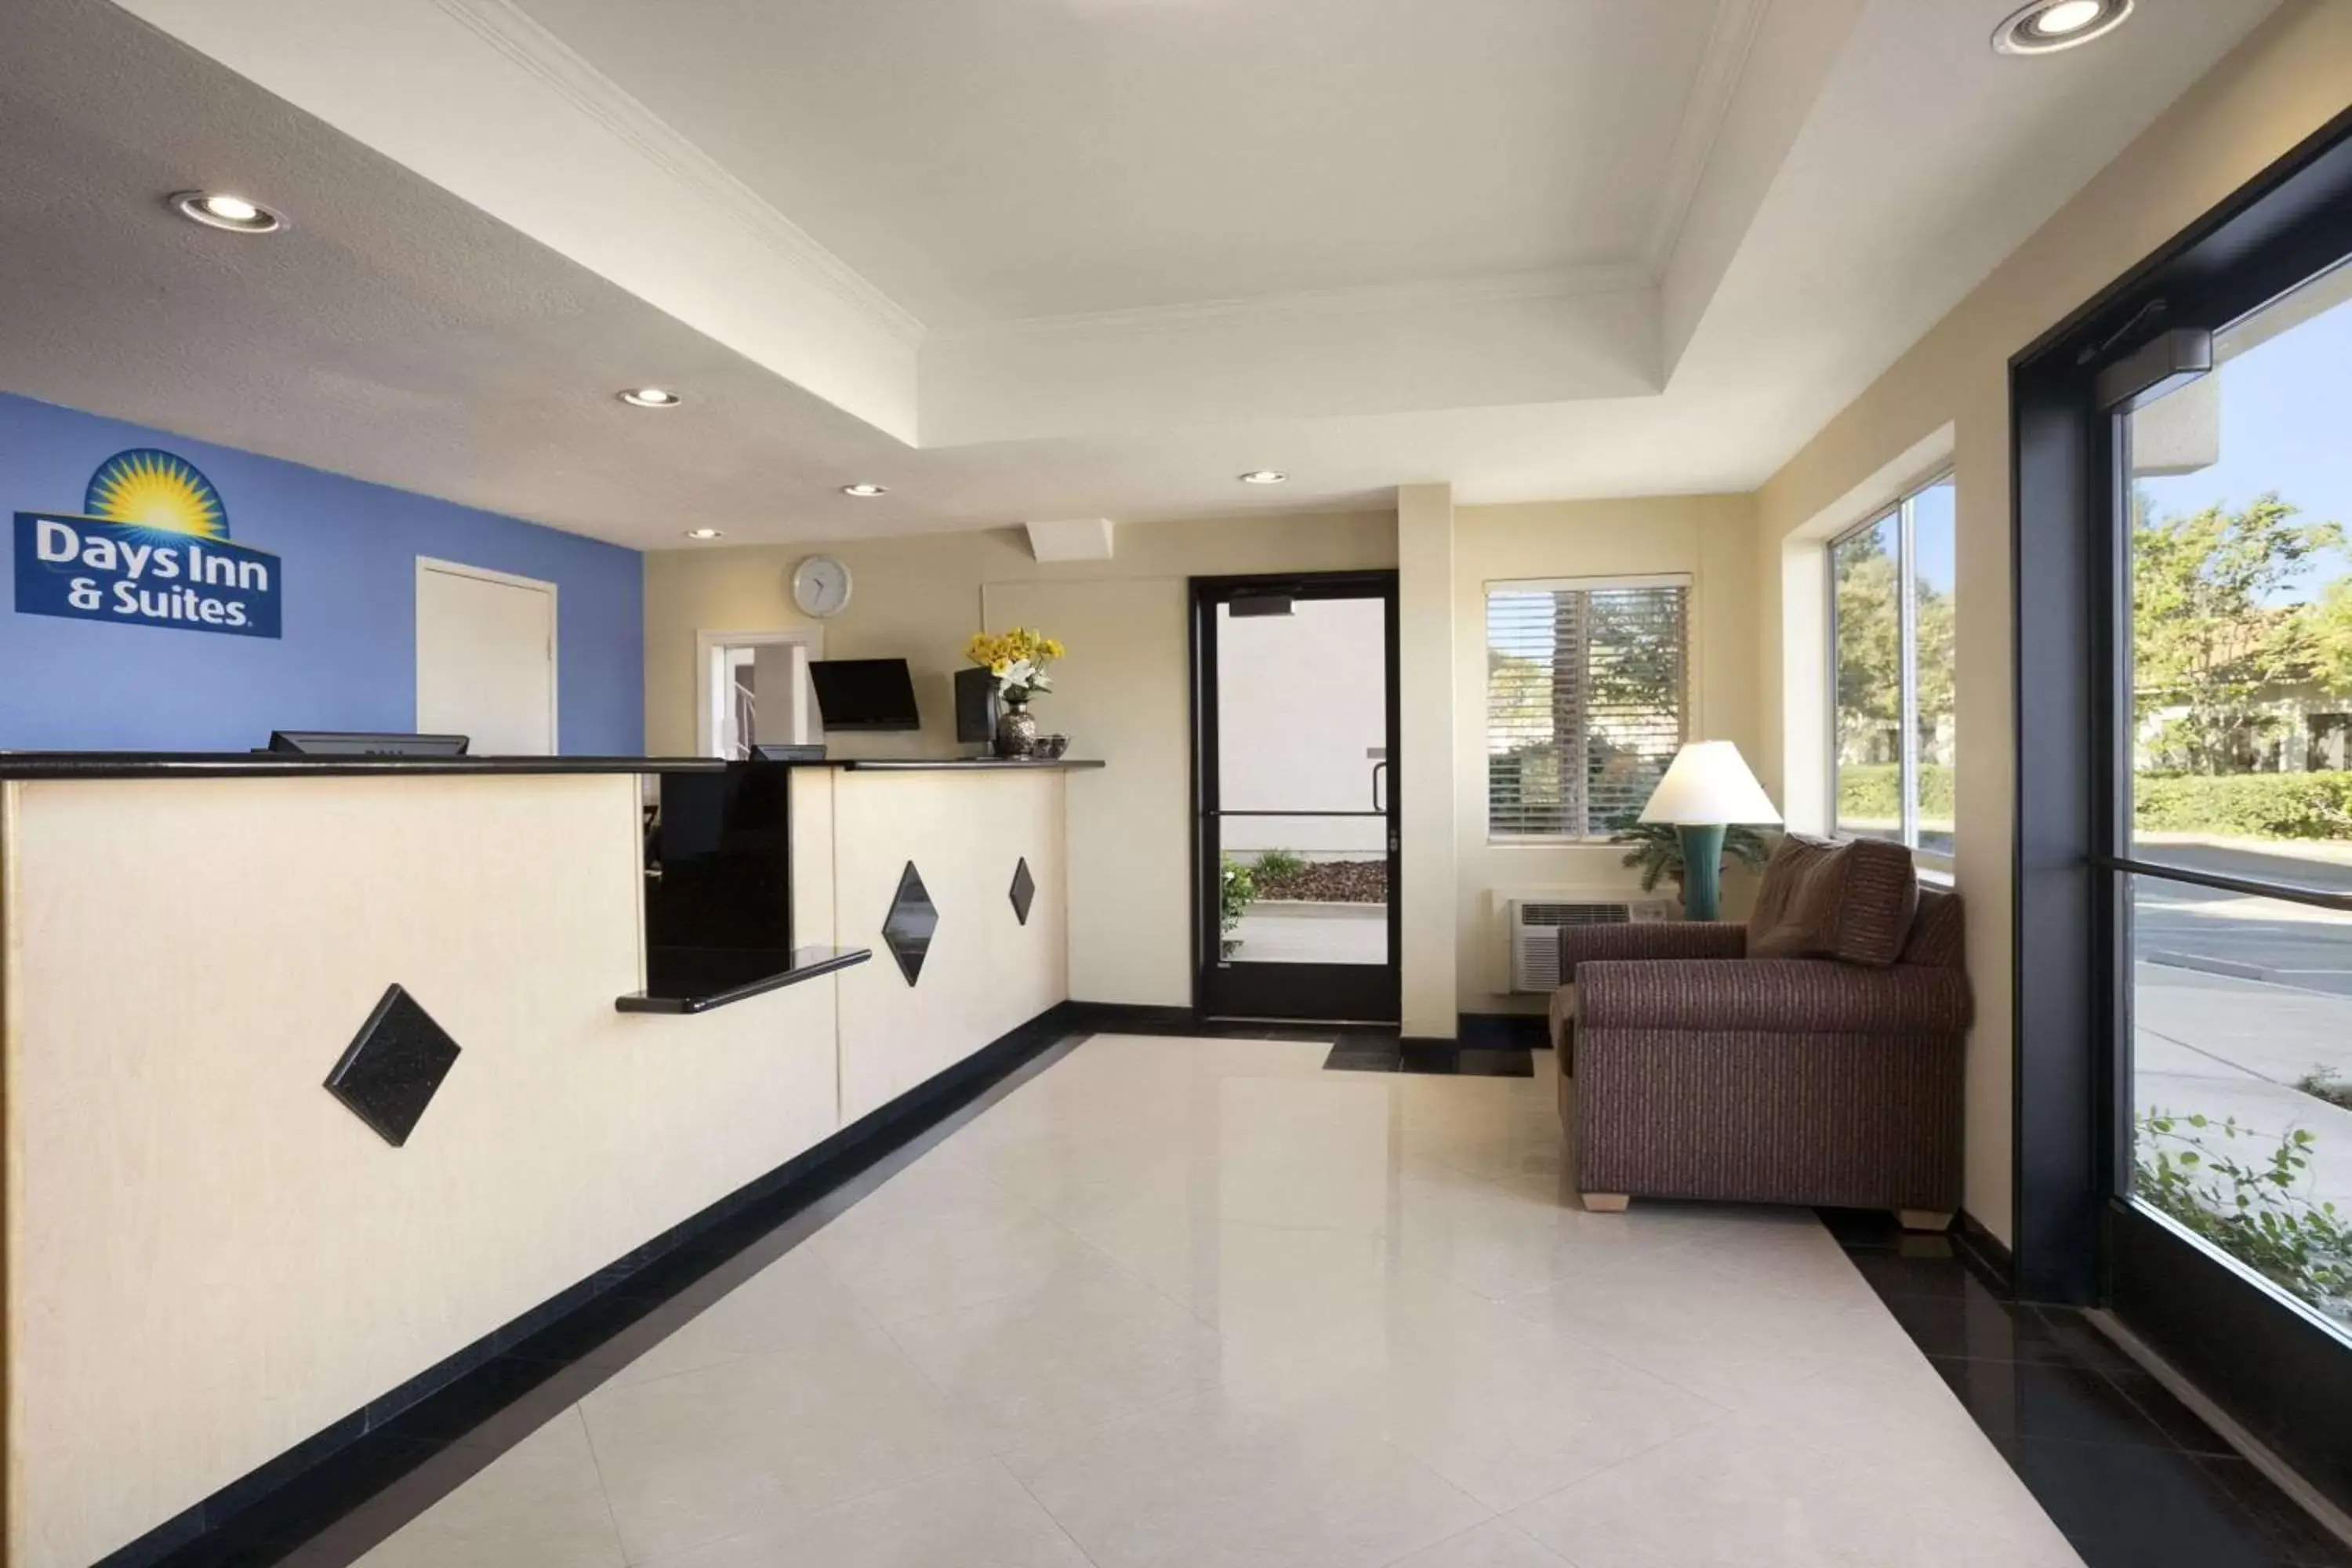 Lobby or reception, Lobby/Reception in Days Inn & Suites by Wyndham Rancho Cordova